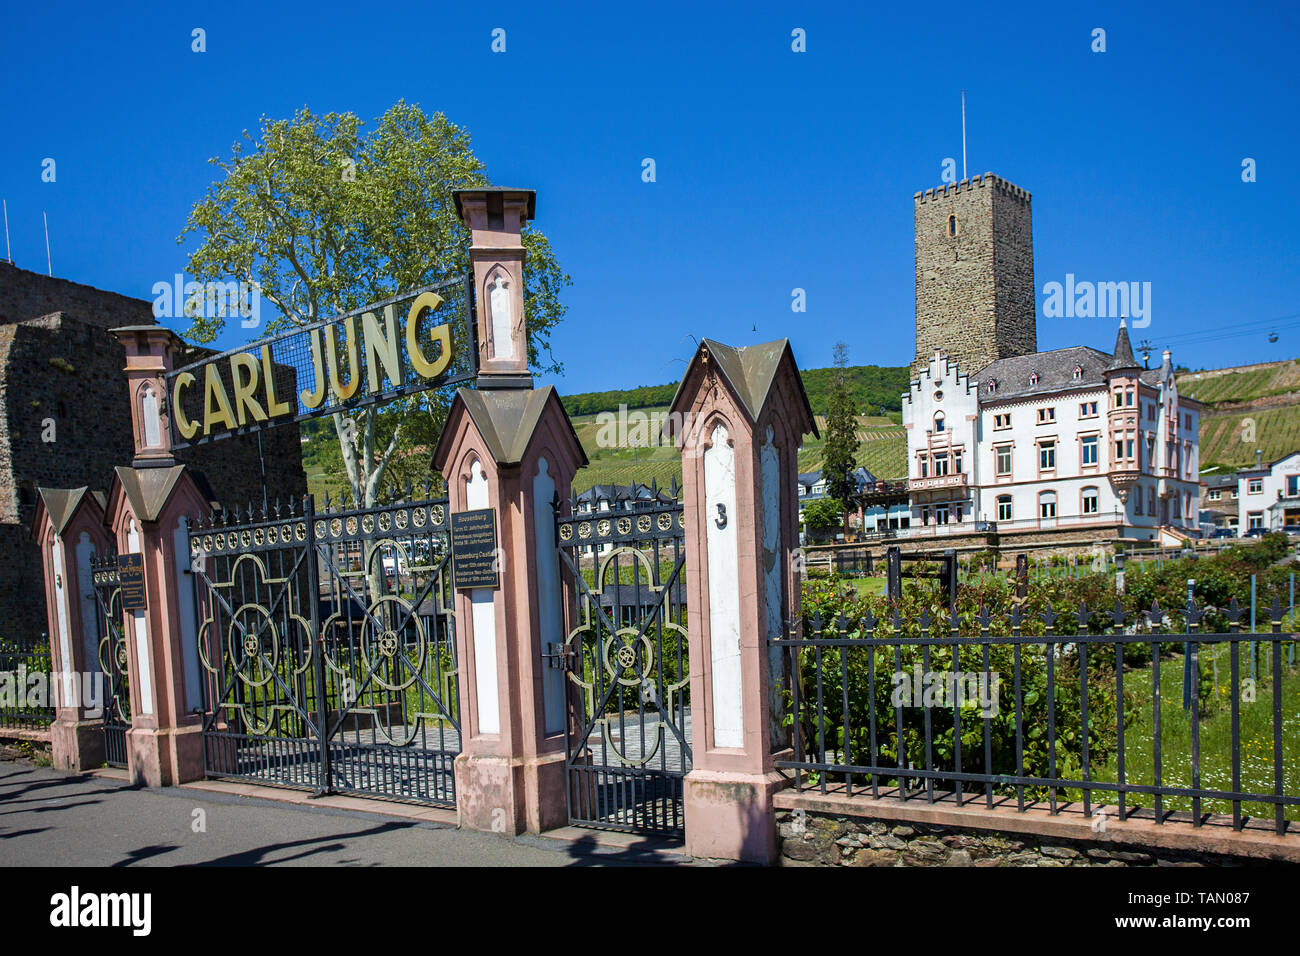 Weingut Jung und die Boosenburg in Rüdesheim am Rhein, Rheingau-Taunus-Kreis, Oberes Mittelrheintal, Hessen, Deutschland | Vineyard Jung and Boosenbur Stock Photo